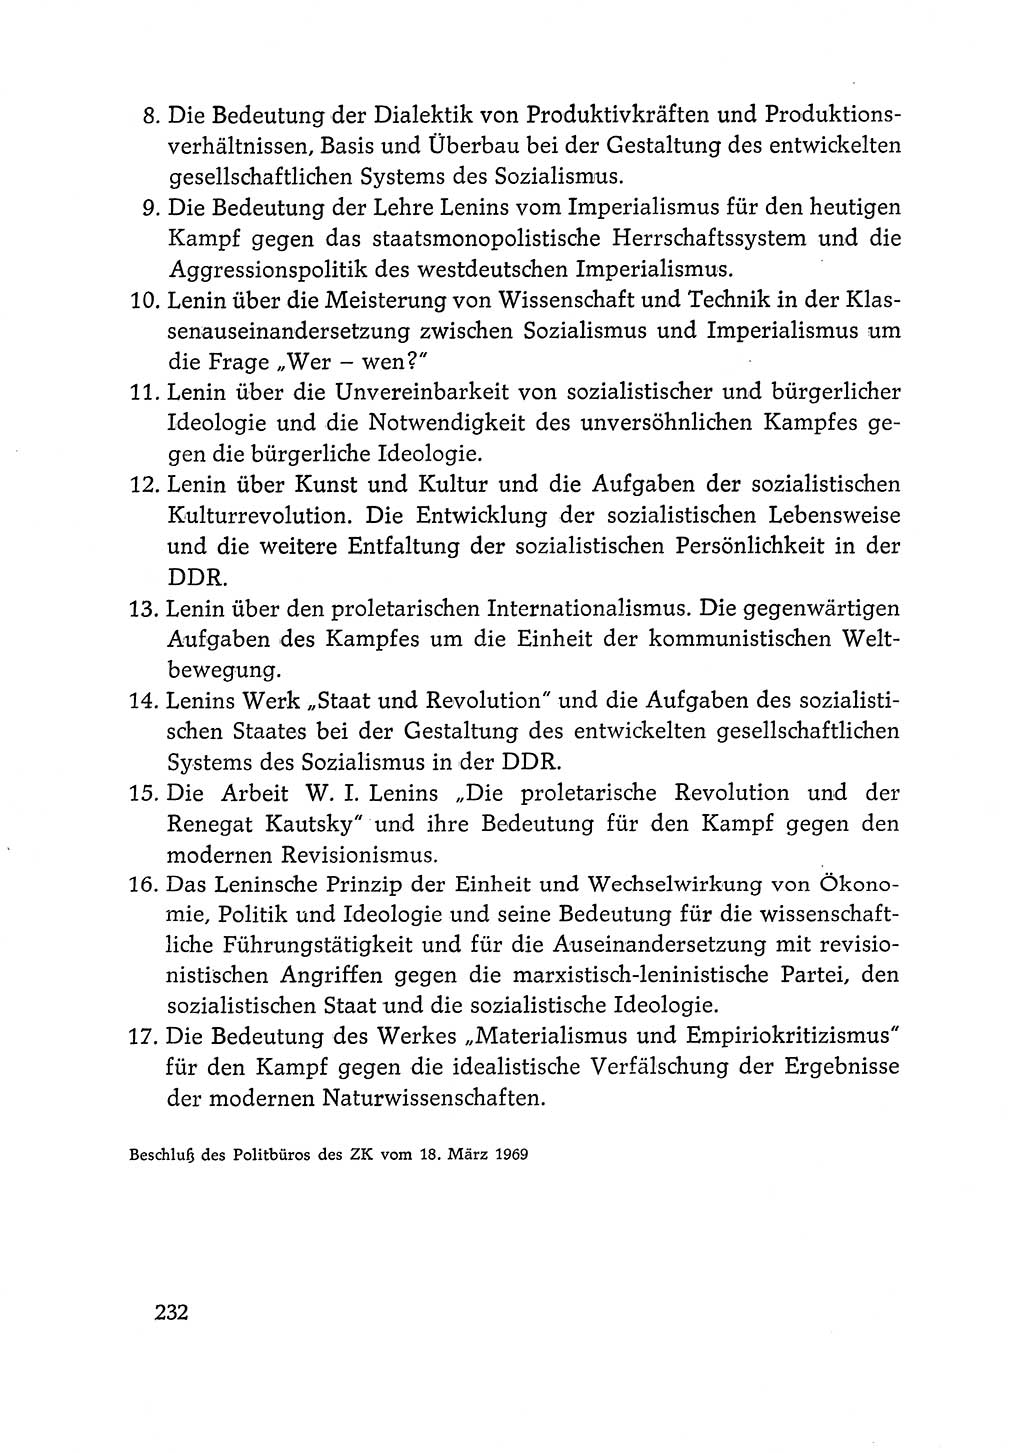 Dokumente der Sozialistischen Einheitspartei Deutschlands (SED) [Deutsche Demokratische Republik (DDR)] 1968-1969, Seite 232 (Dok. SED DDR 1968-1969, S. 232)